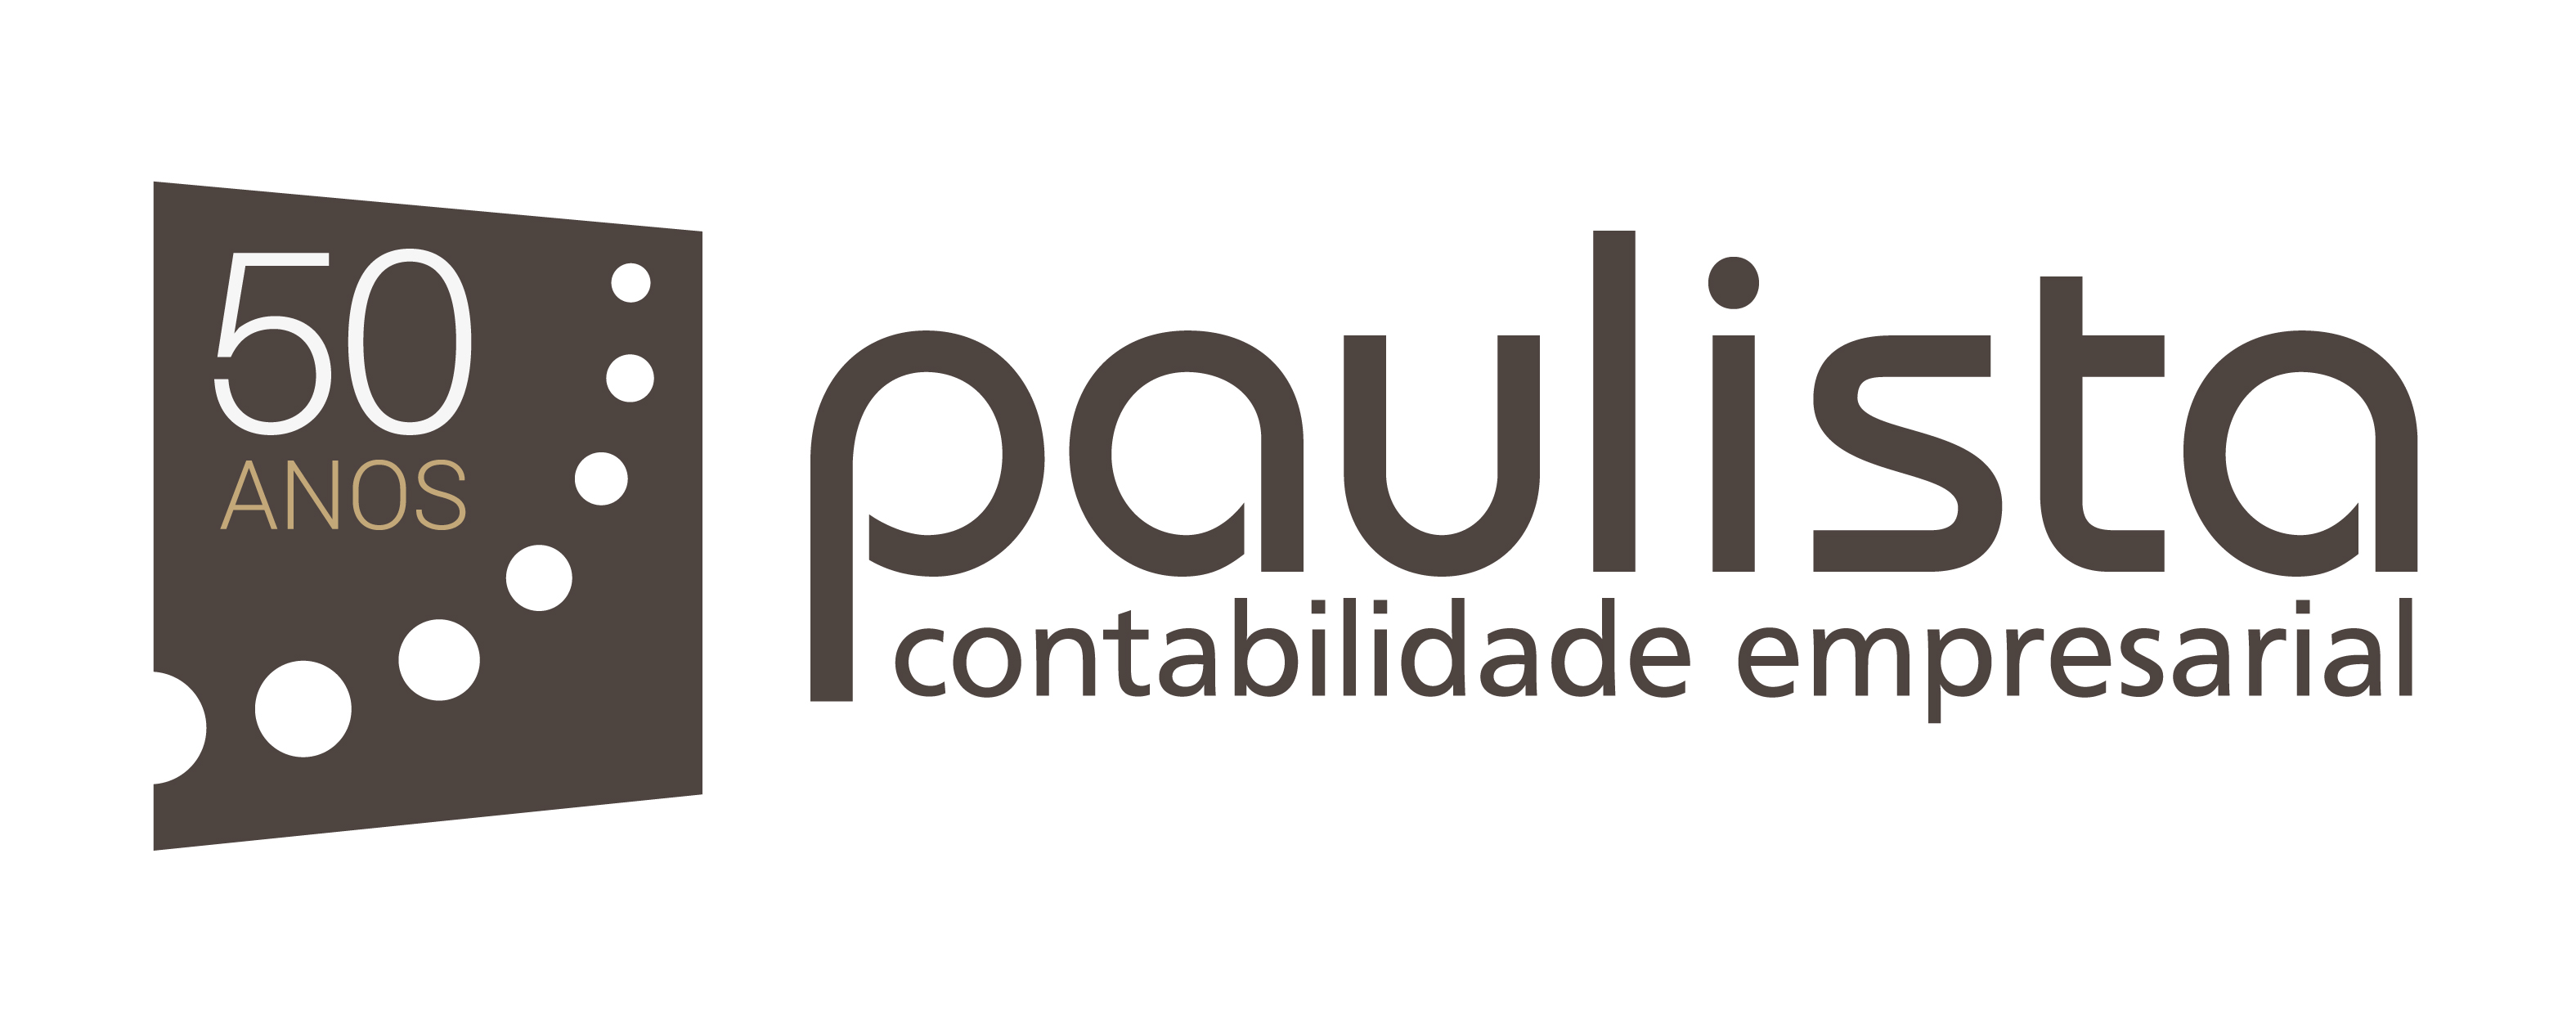 Paulista Contabilidade empresarial